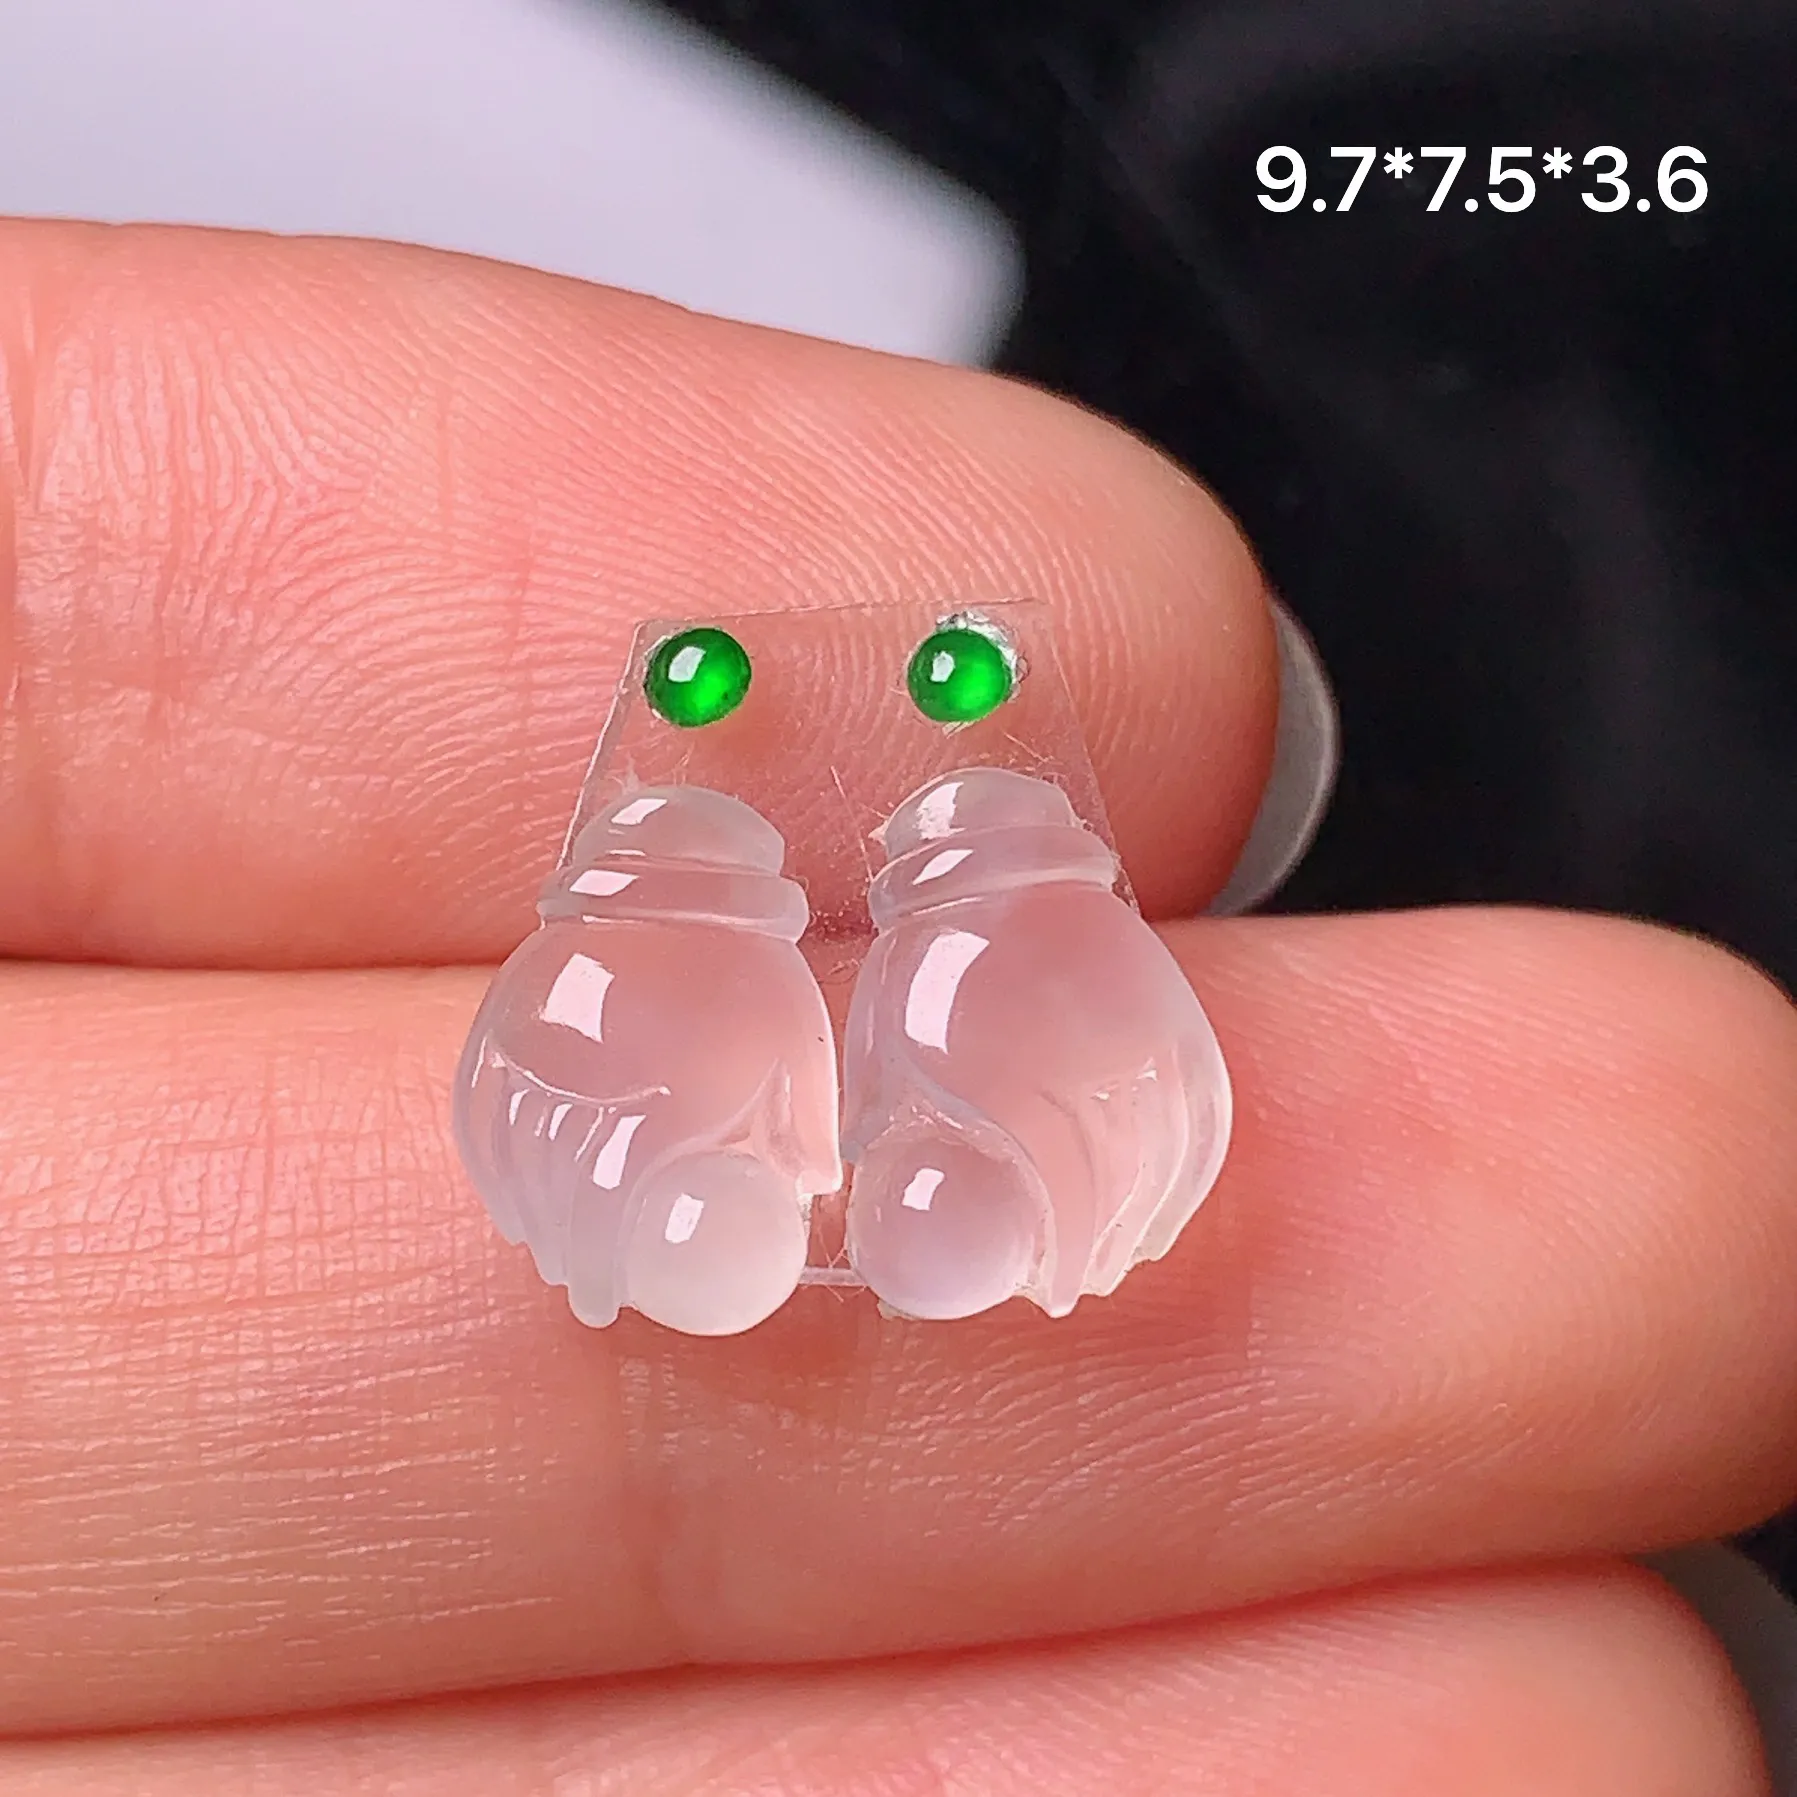 镶嵌款 掌上明珠一对 玉质细腻 水润透亮 色泽艳丽 搭配绿色小蛋面 整体尺寸9.7*7.5*3.6